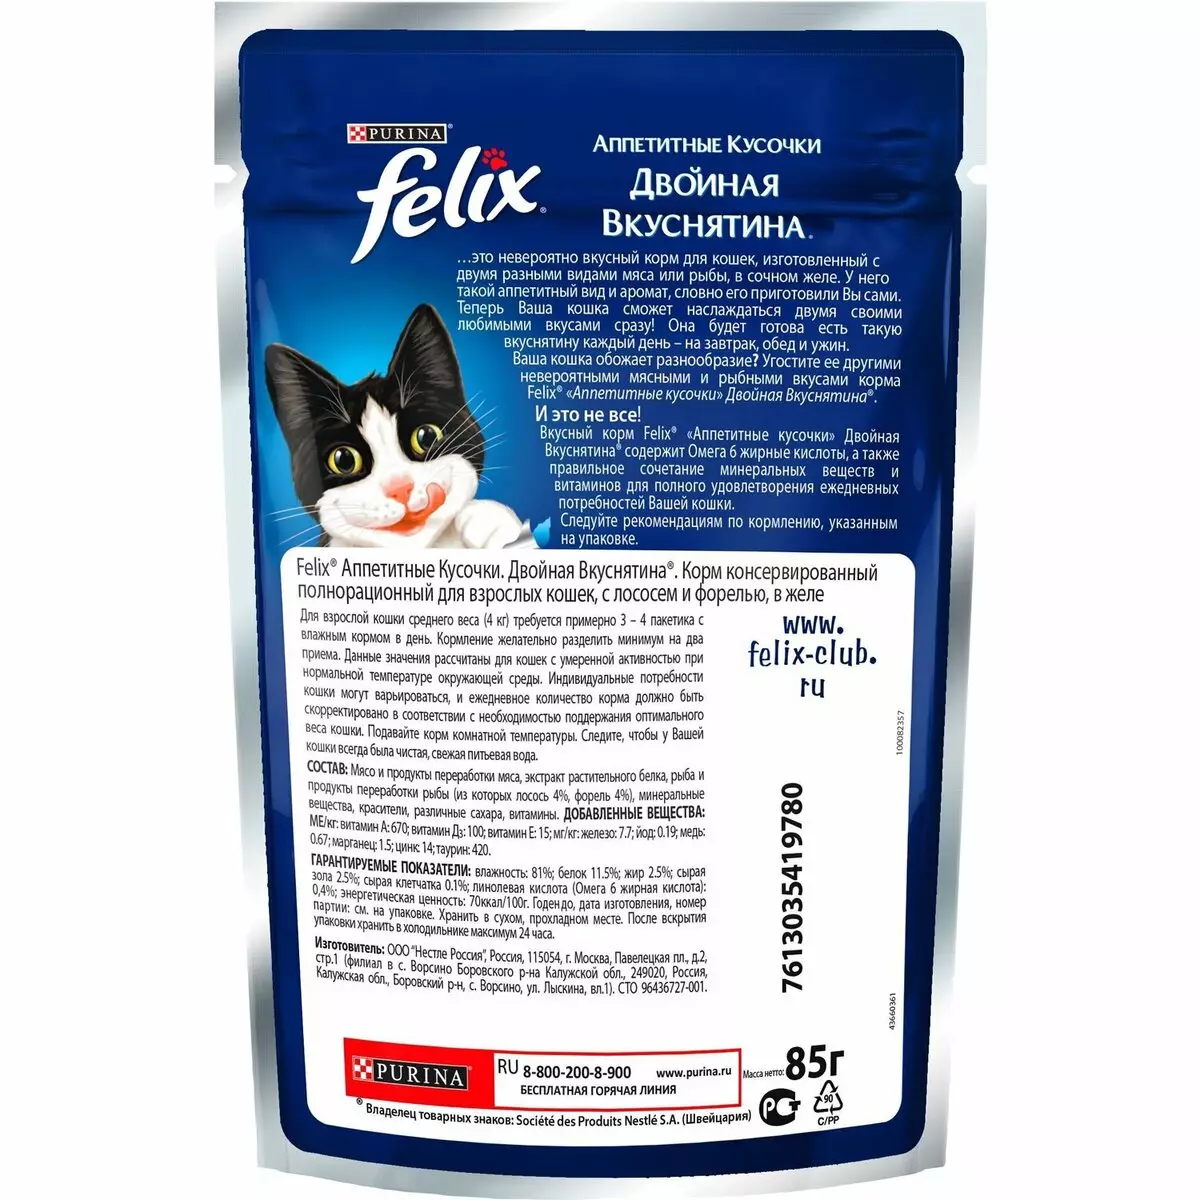 სველი საკვები Felix Cats: კომპოზიცია თხევადი კვების კატა, ზოგადი აღწერა და სხვადასხვა ასორტიმენტი. შეფასება 22138_13